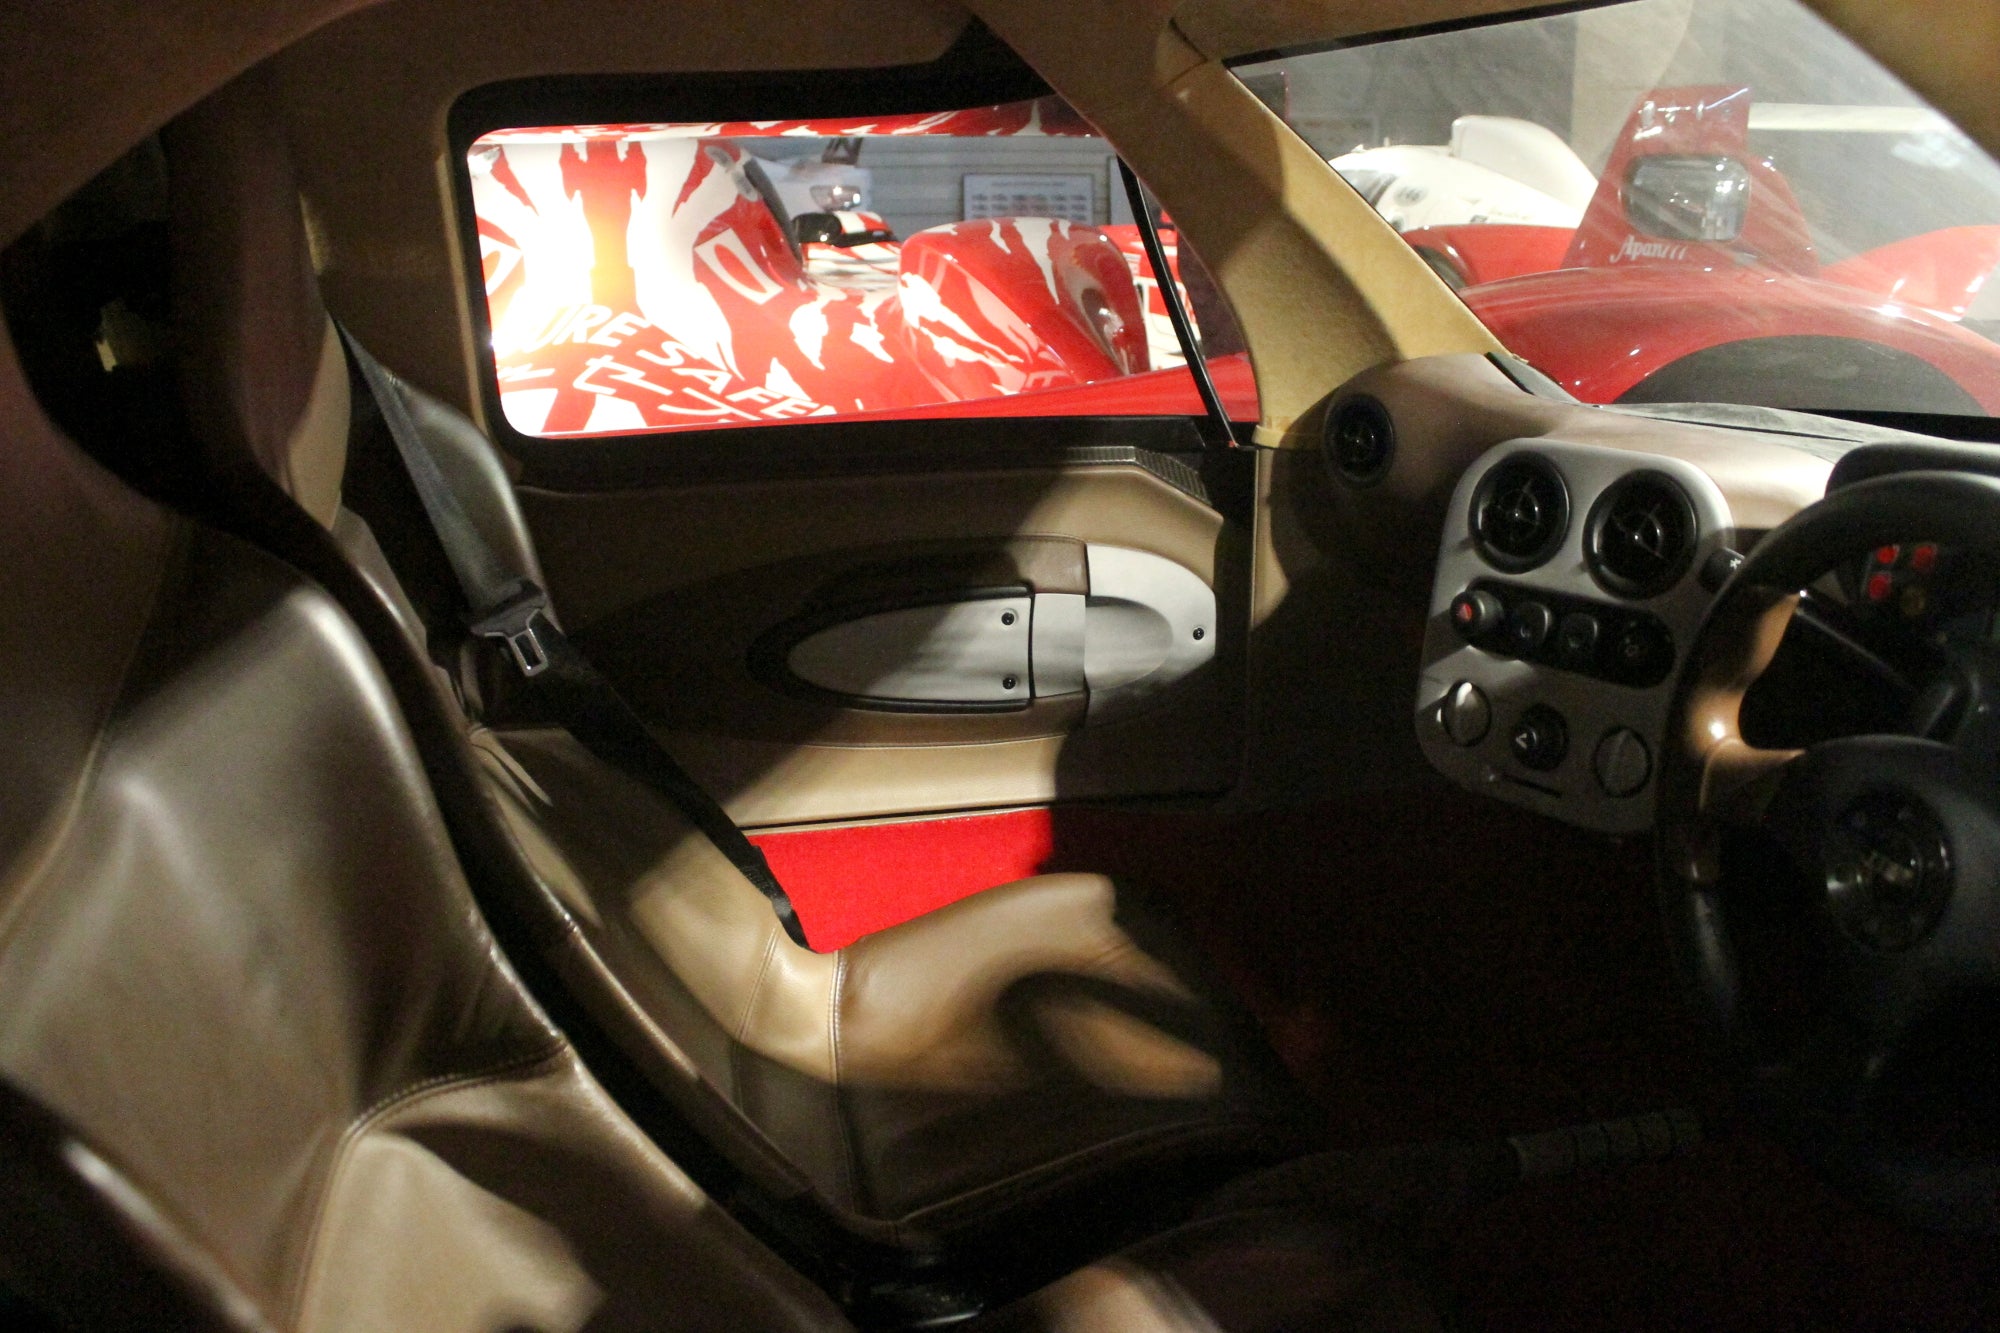 GT-One road car interior., <i>Stef Schrader</i>